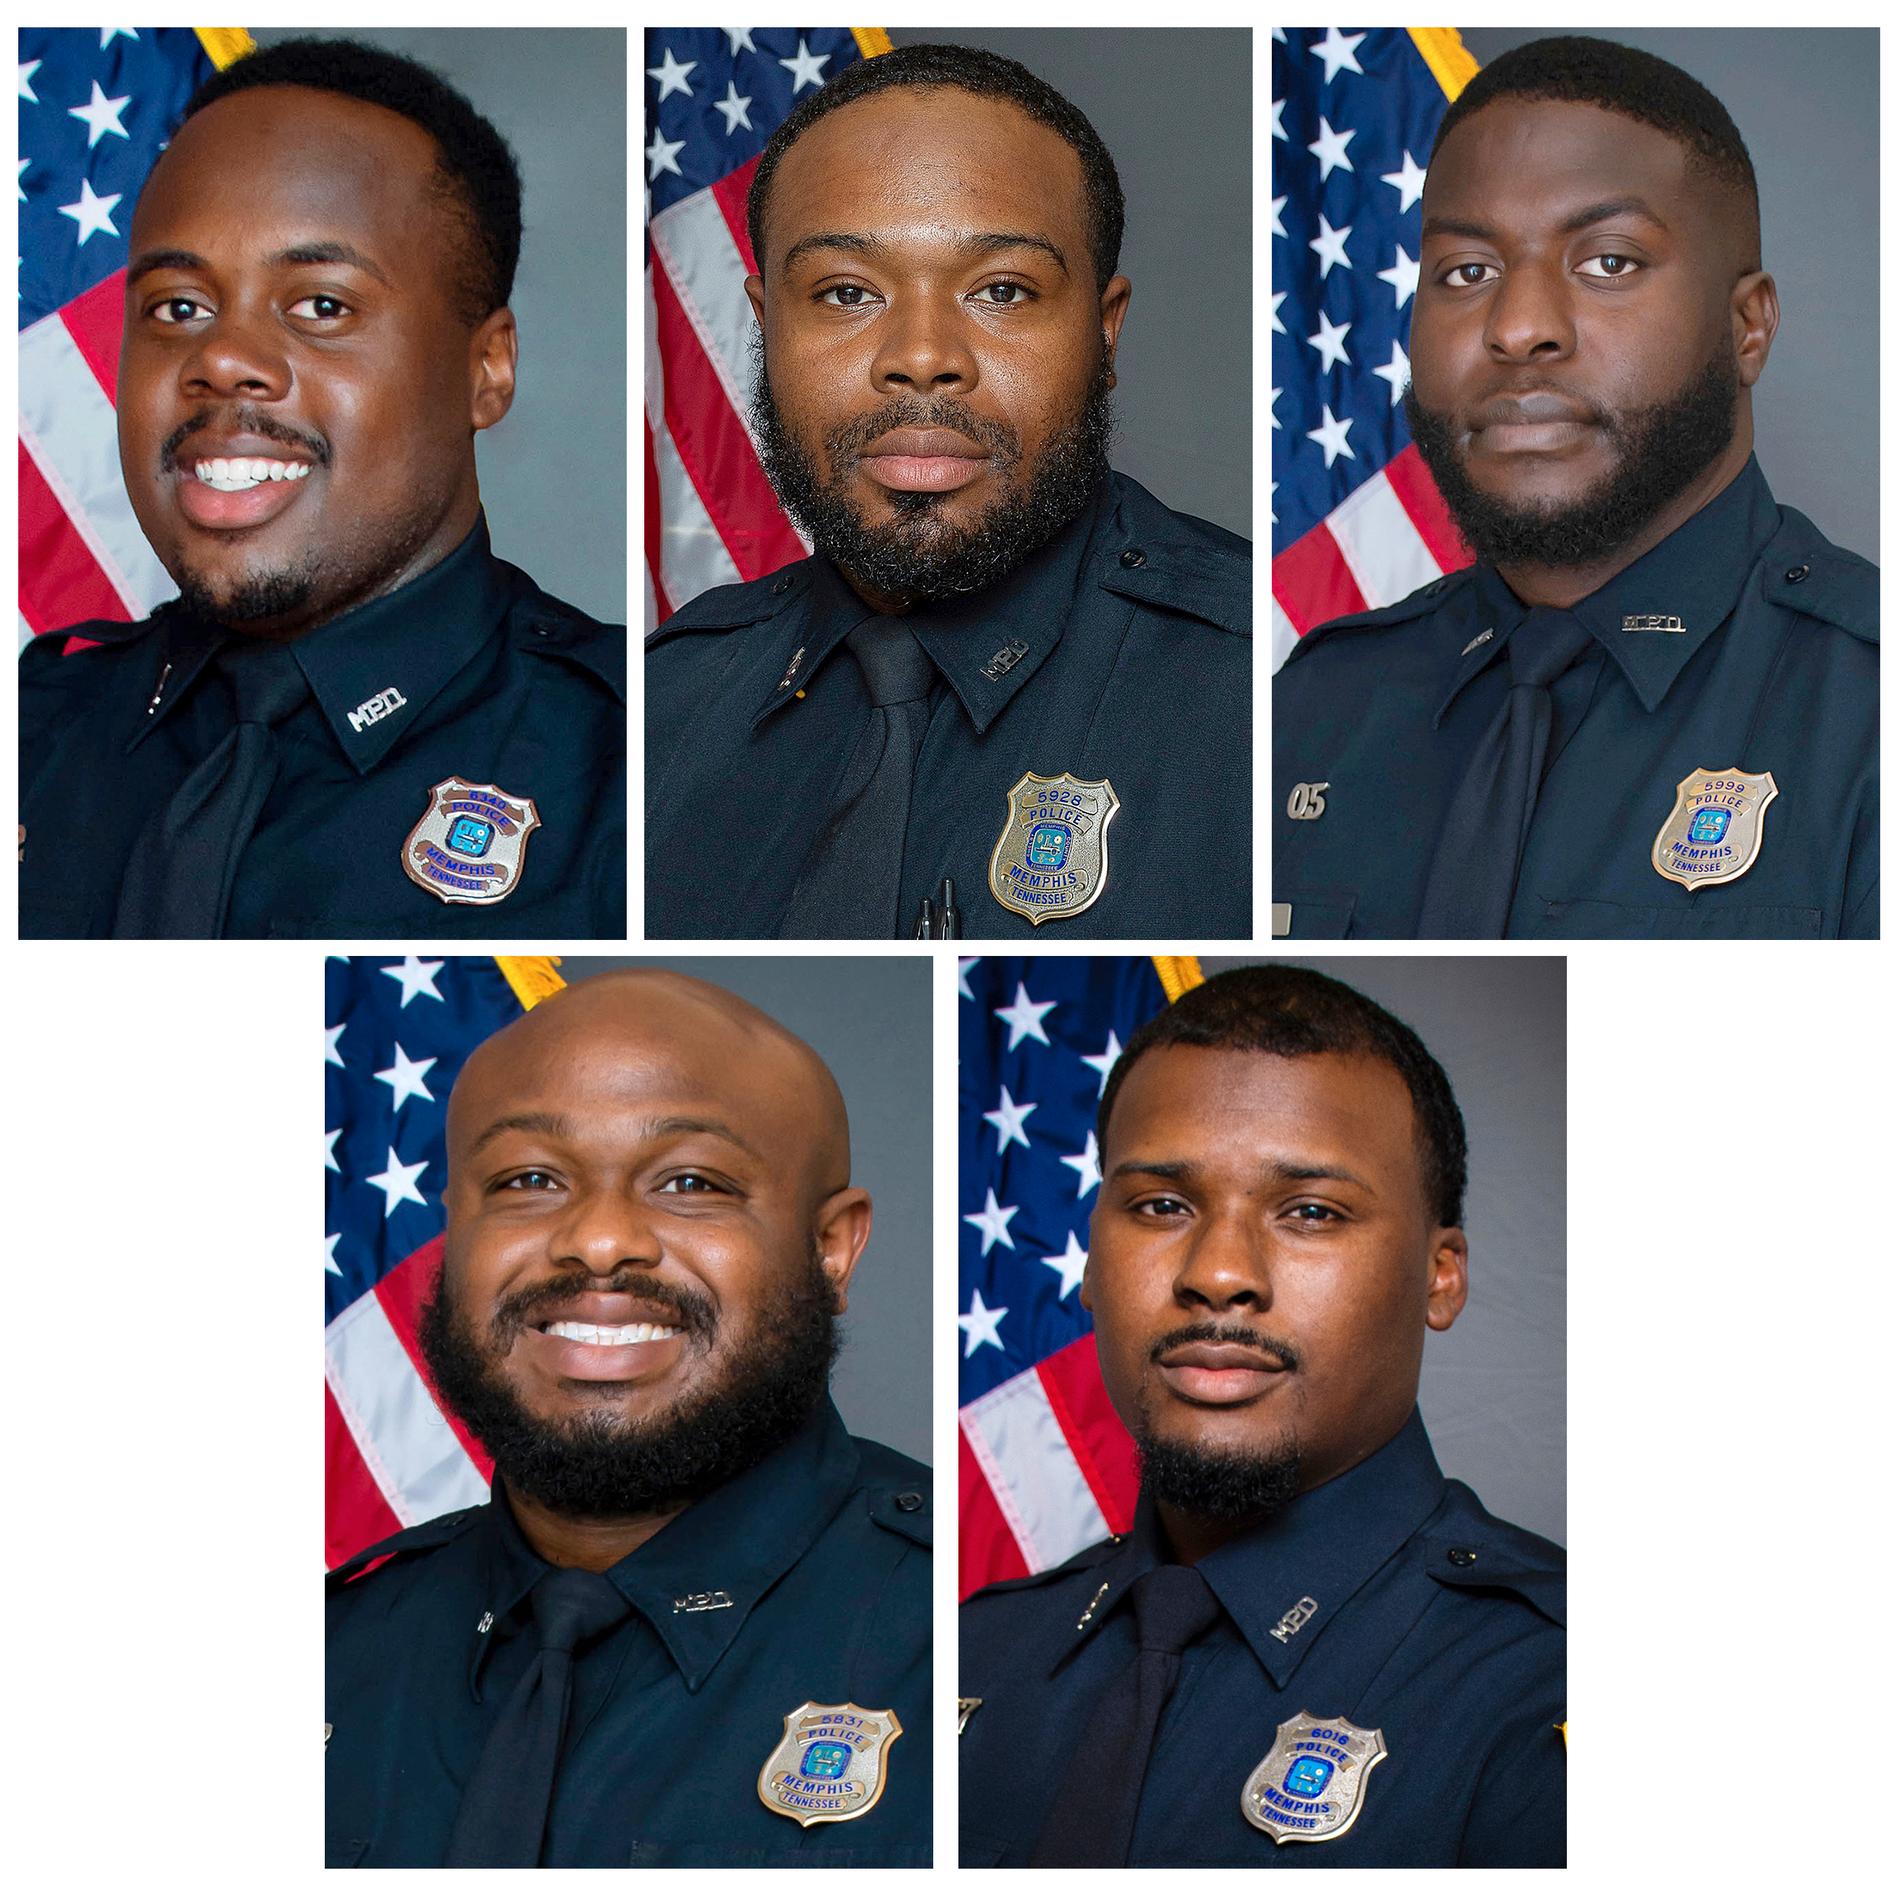 De fem åtalade polismännen: Taddarius Bean, Demetrius Haley, Emmitt Martin III, Desmond Mills Jr och Justin Smith.